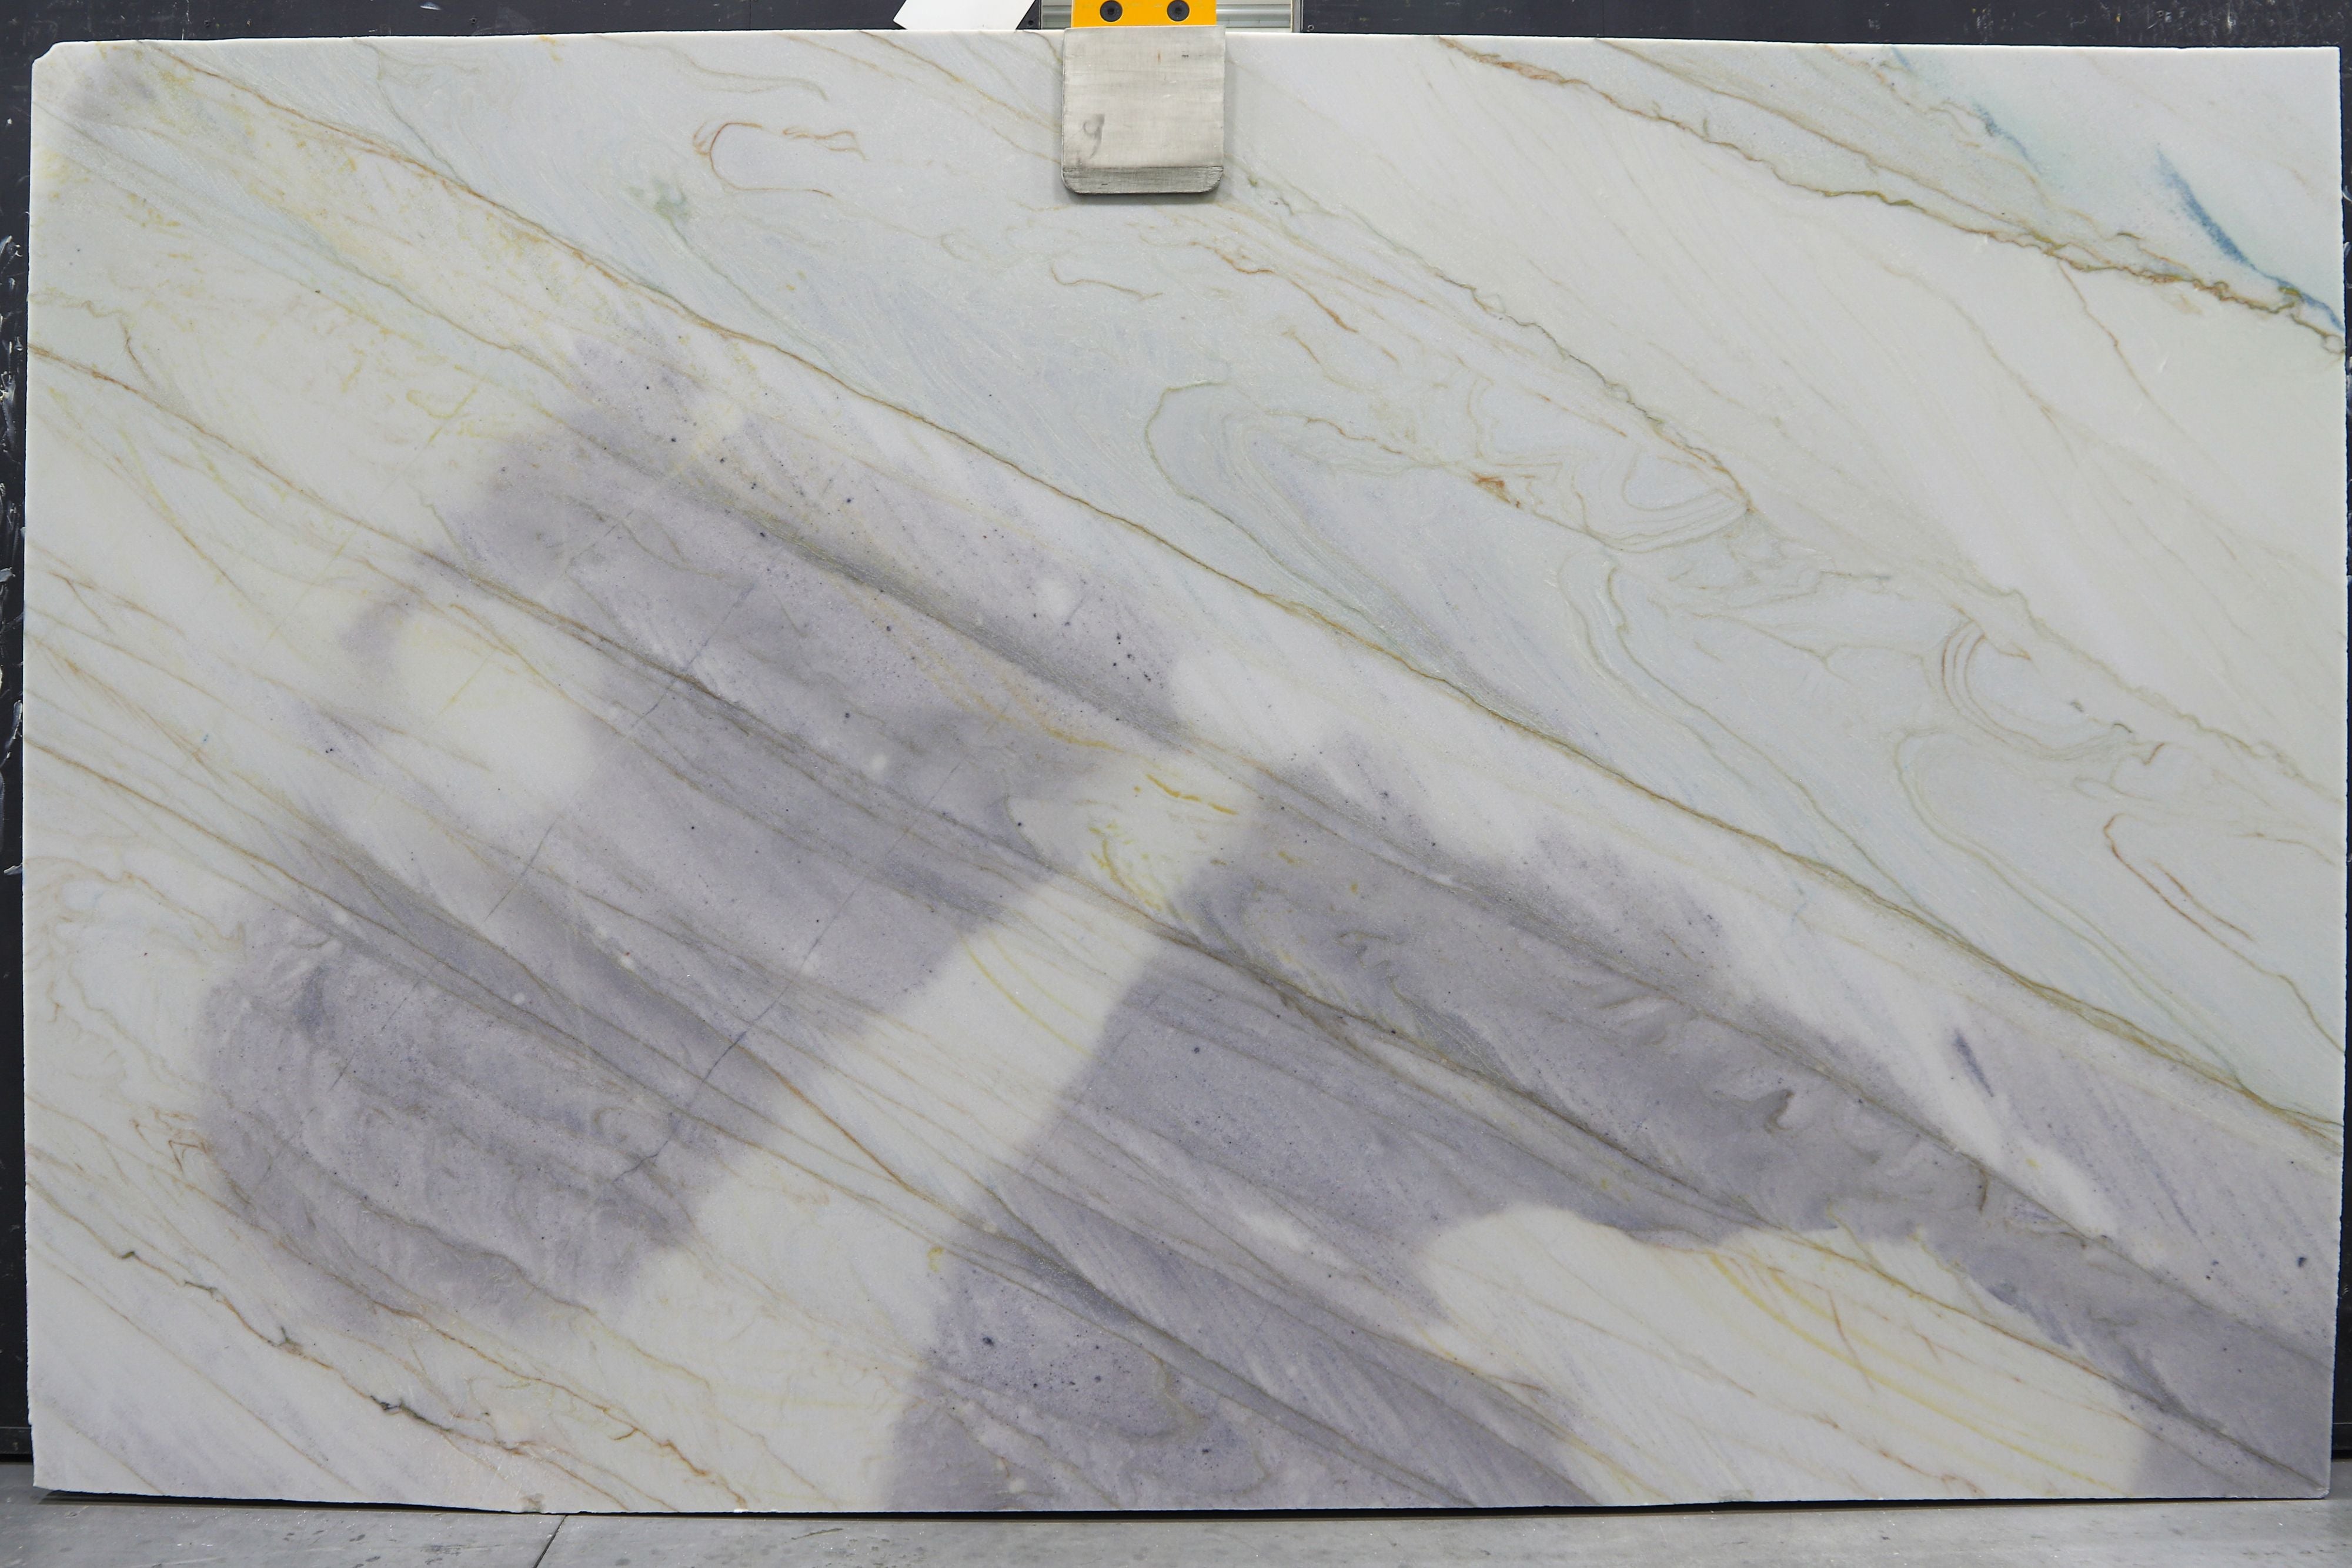  Azulado Quartzite Slab 3/4  Honed Stone - BG13850#21 -  76X123 